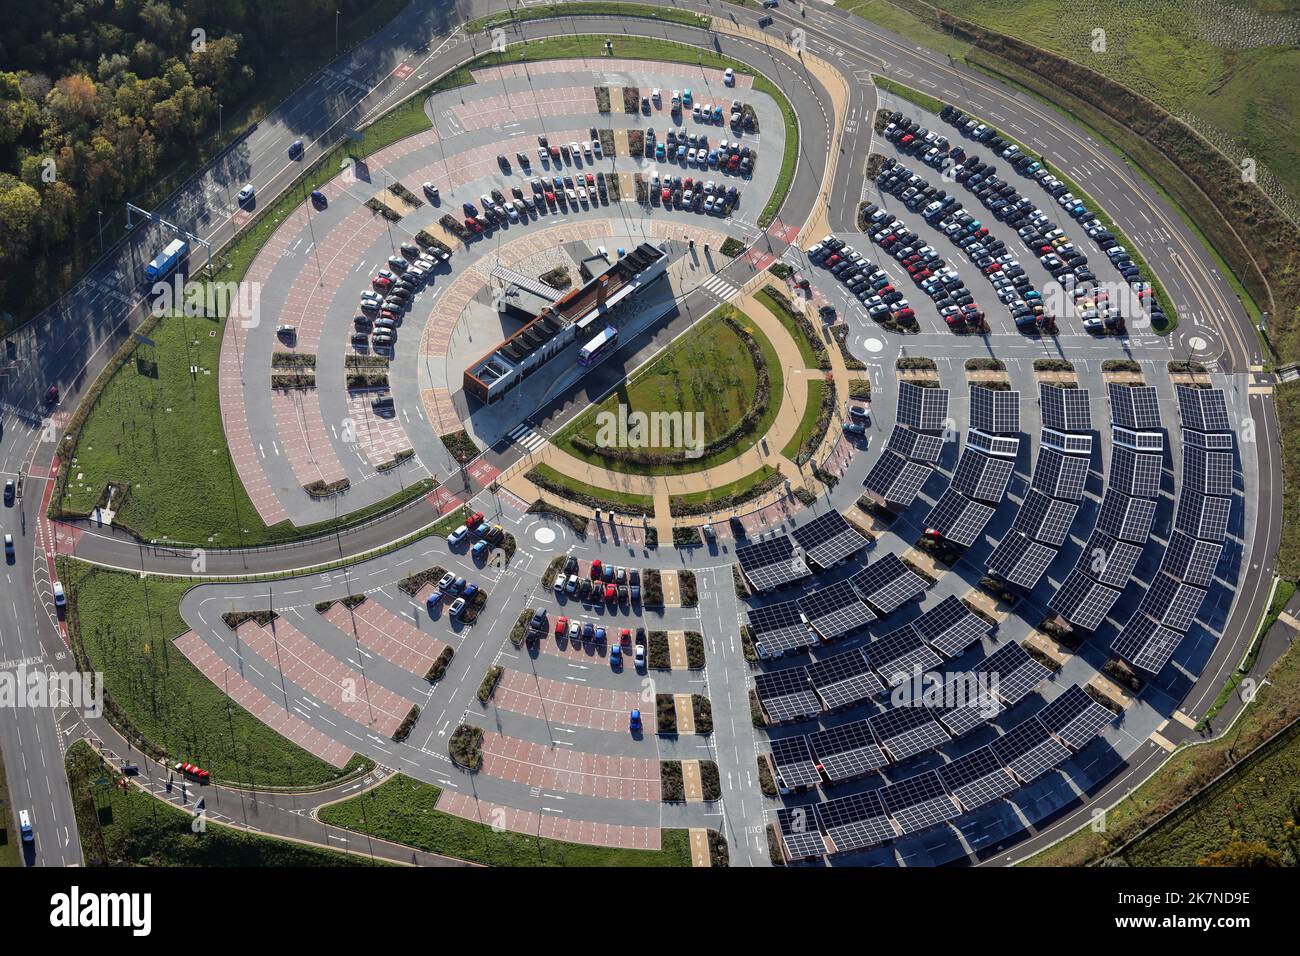 Luftaufnahme von Stourton Park & Ride, Leeds. Viele der Parkbuchten haben solargetäfelte Dächer. Stockfoto